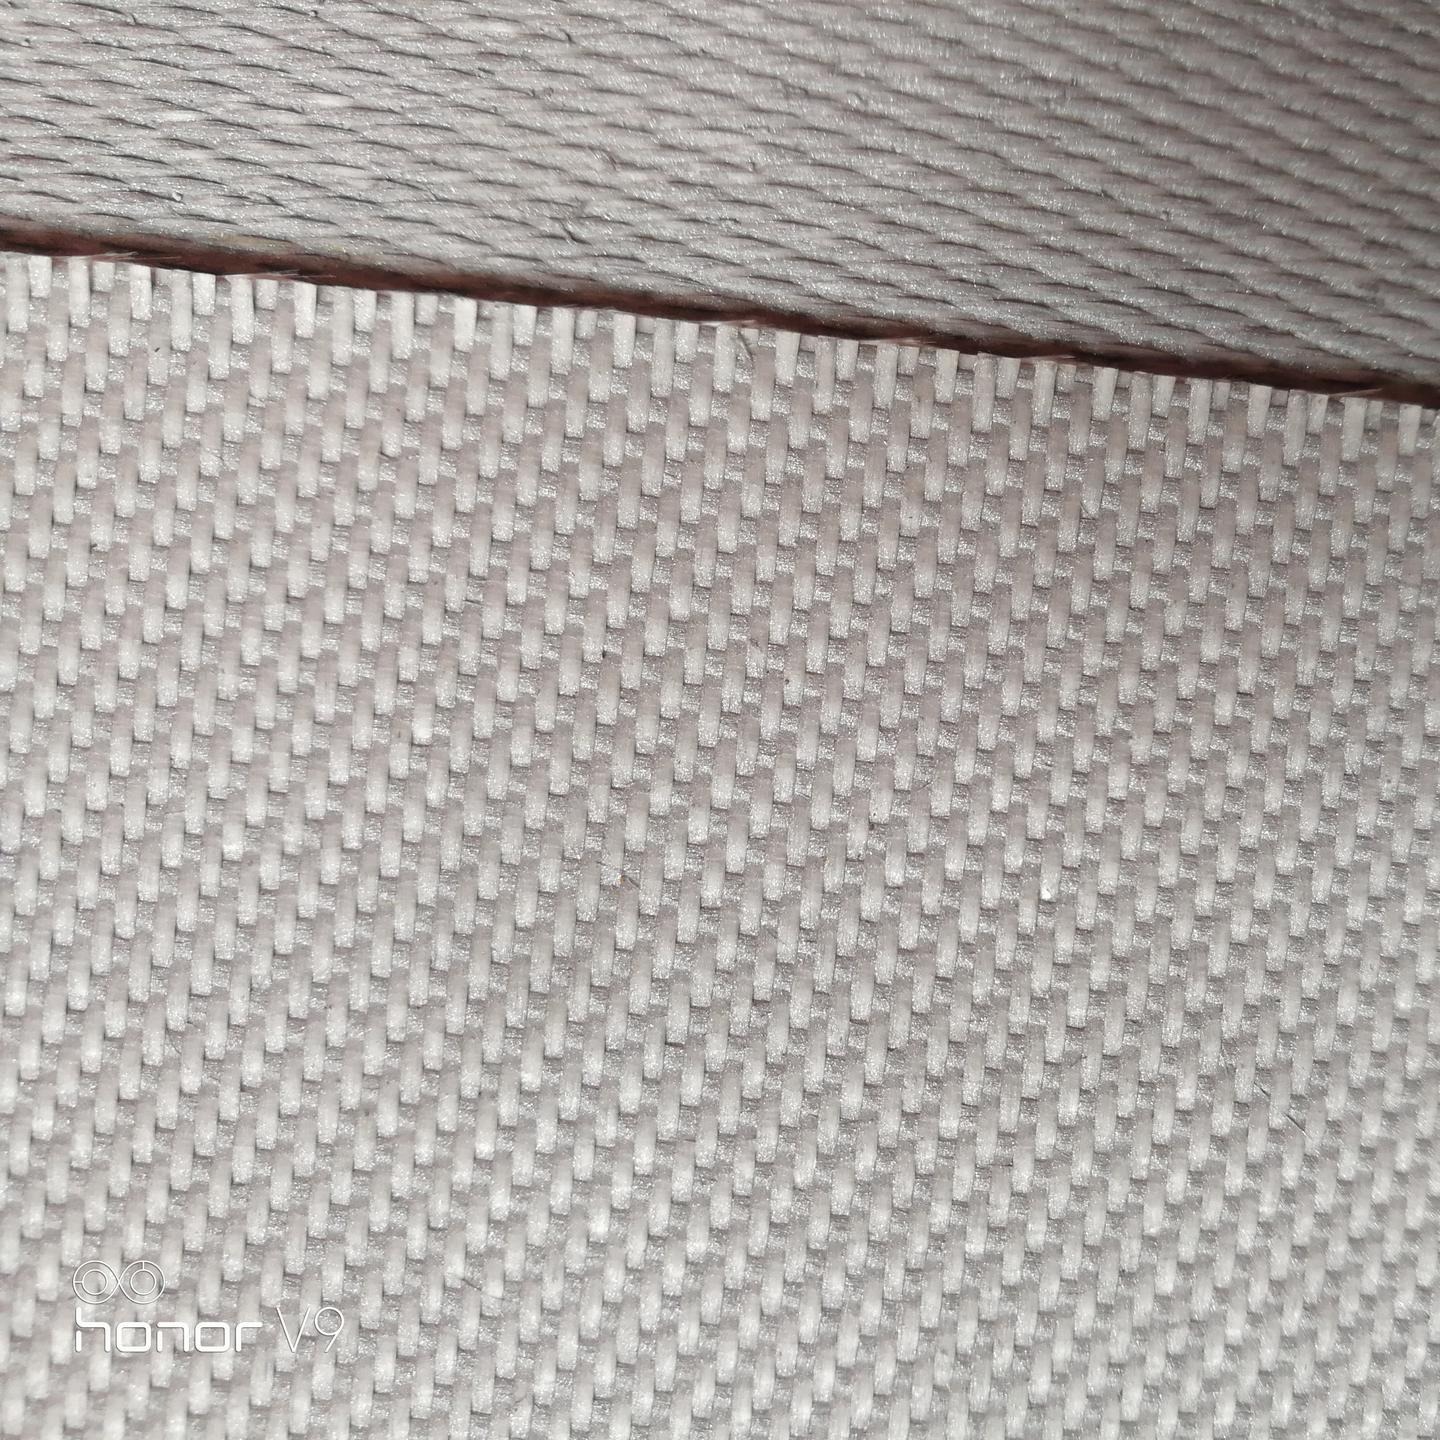 廊坊陶瓷纤维布生产厂家 硅酸铝陶瓷纤维布价格 安朗 自产自销优质陶瓷纤维布 2mm-5mm厚陶瓷纤维布图片